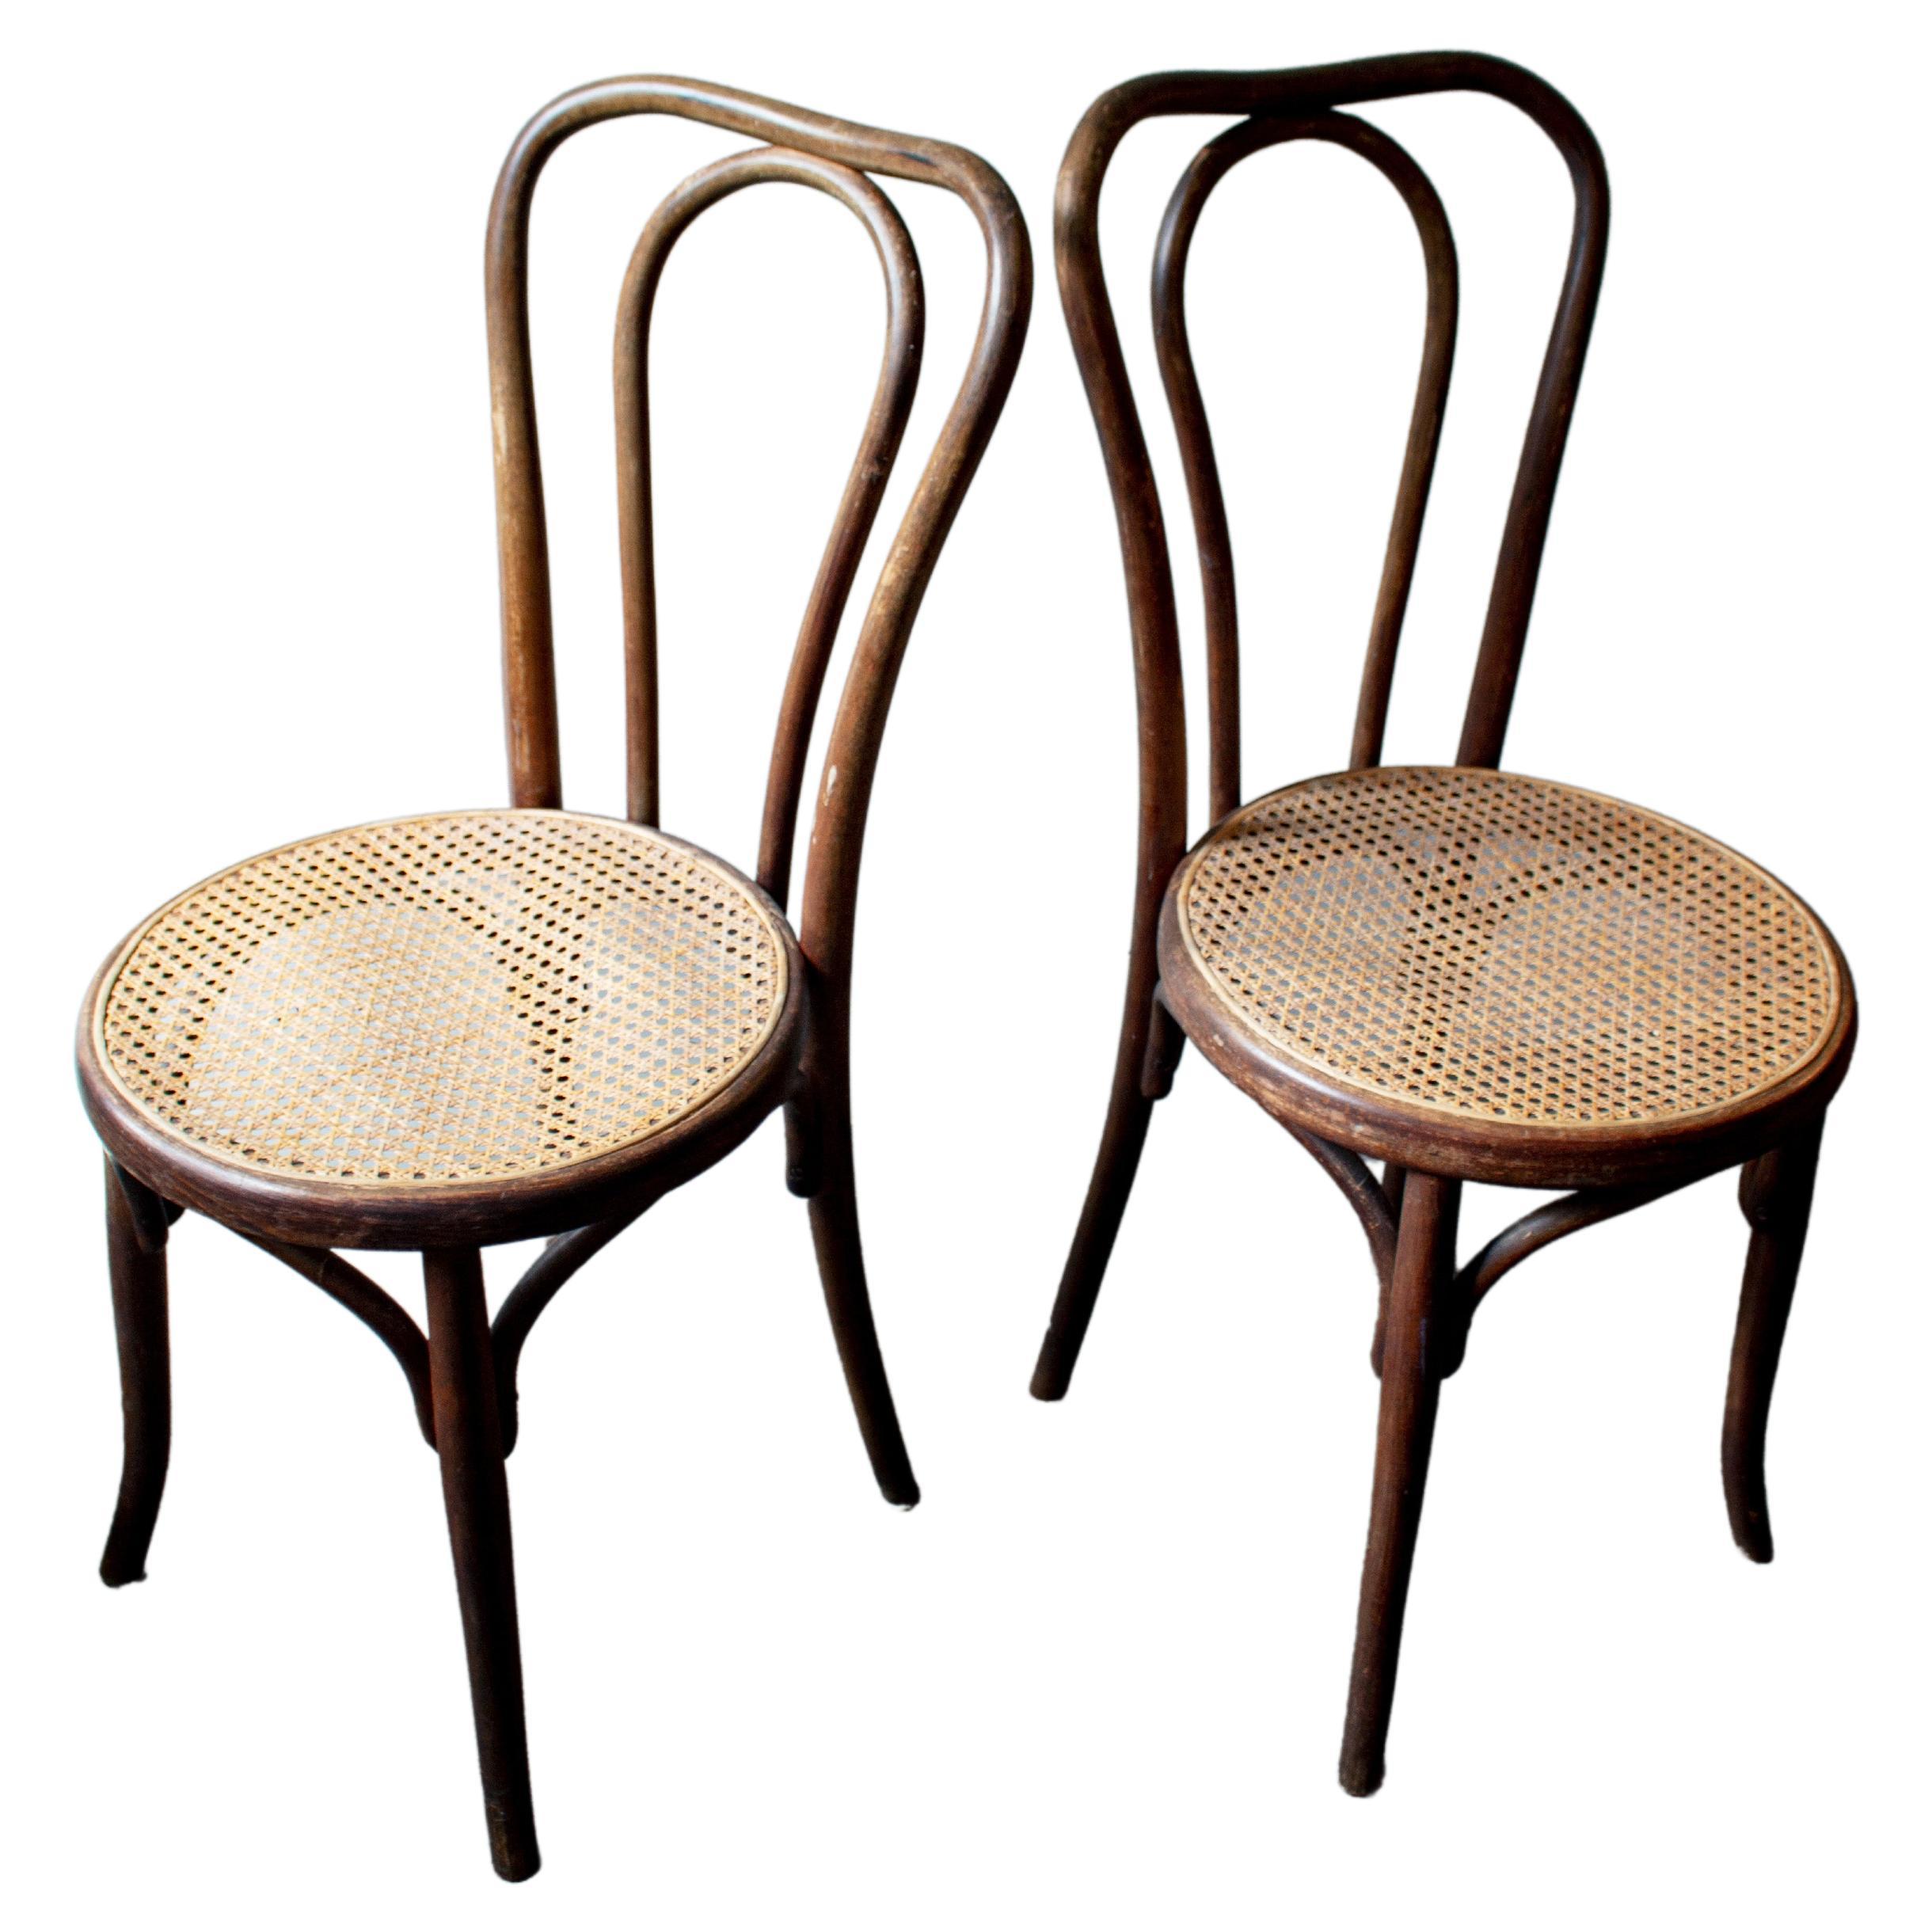 Thonet Cane Chair Set by Fischel